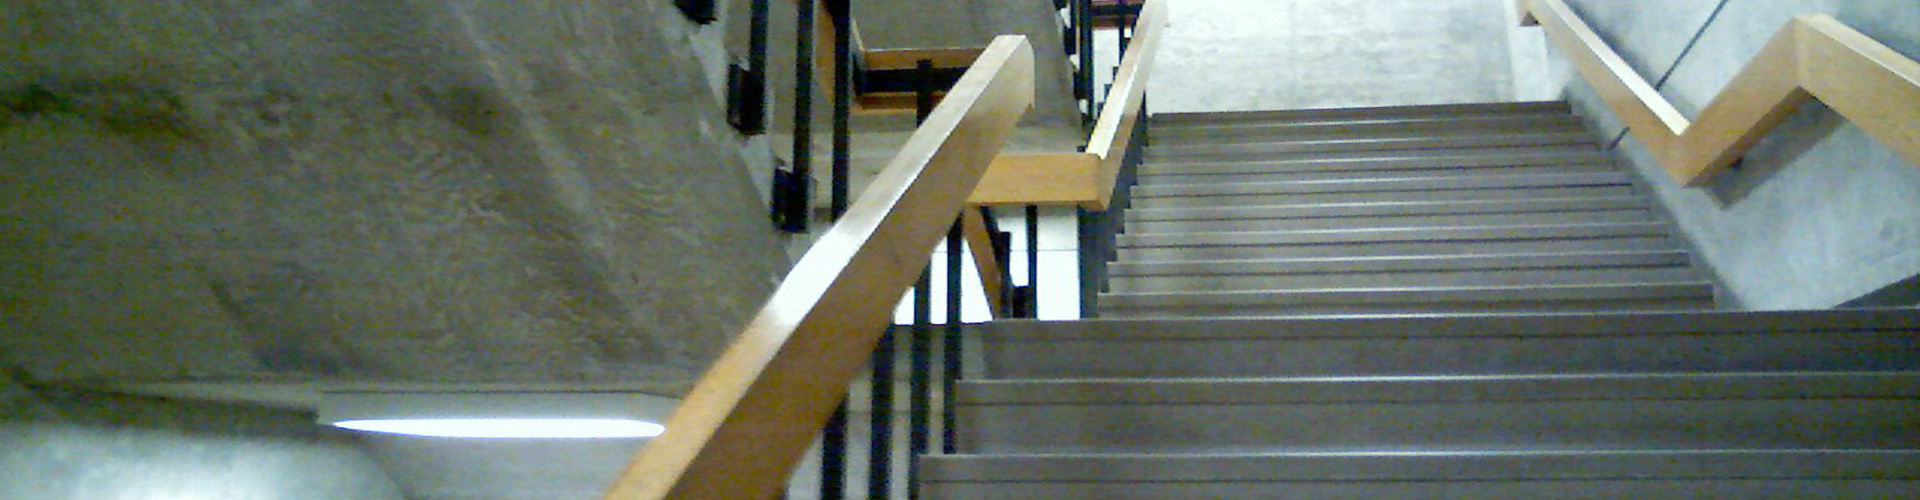 stairwell-pressurisation